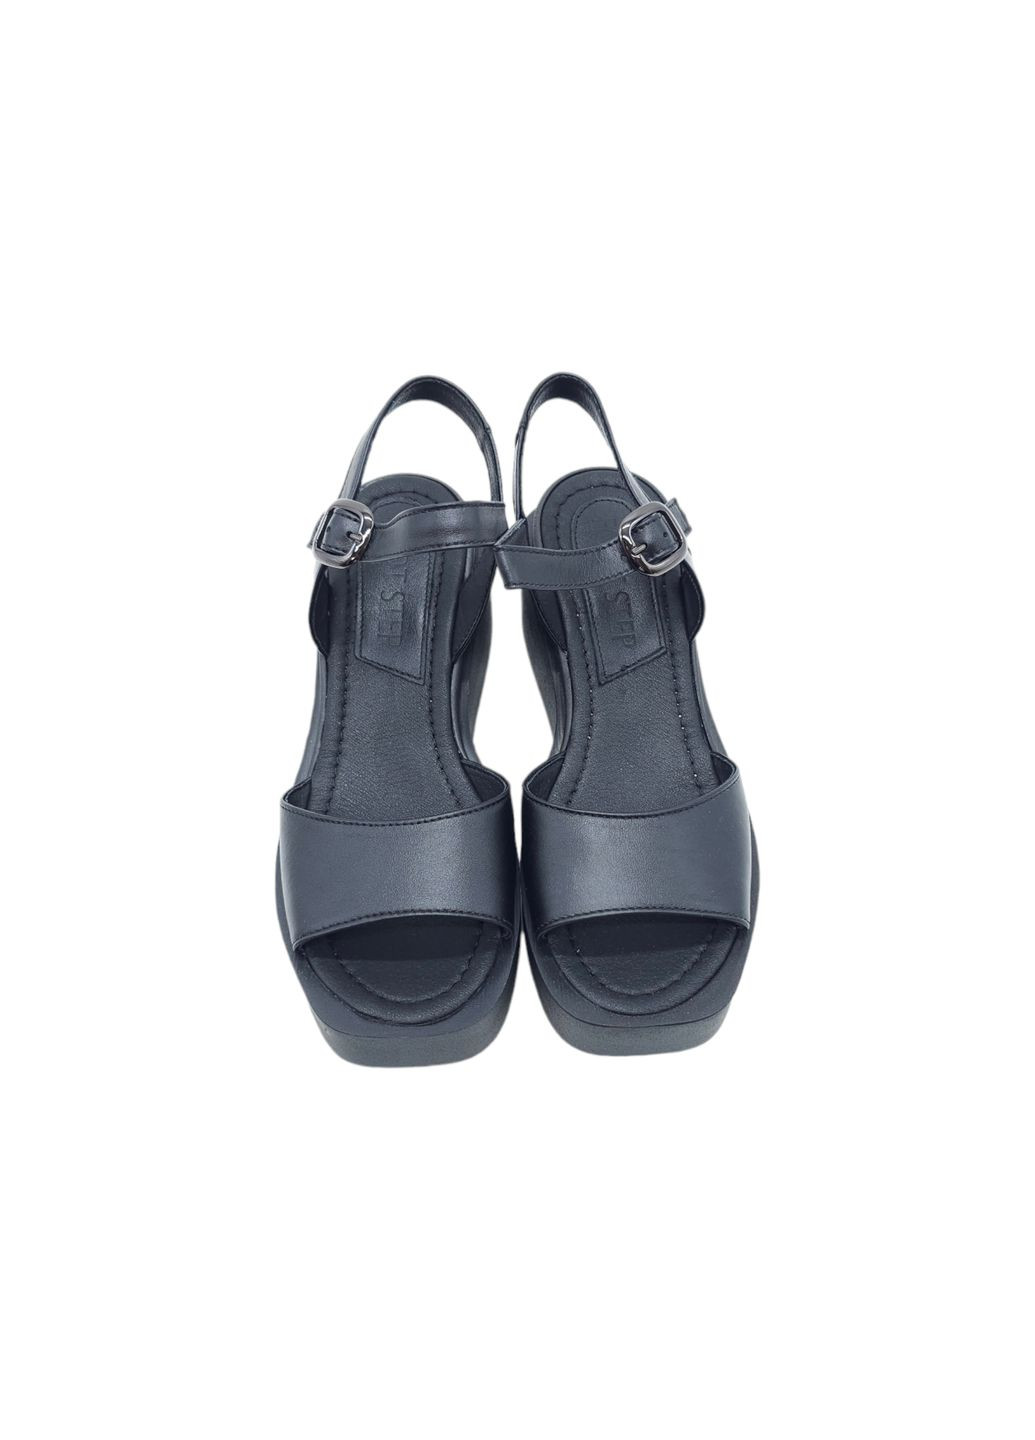 Черные женские босоножки черные кожаные fs-18-23 23 см (р) Foot Step